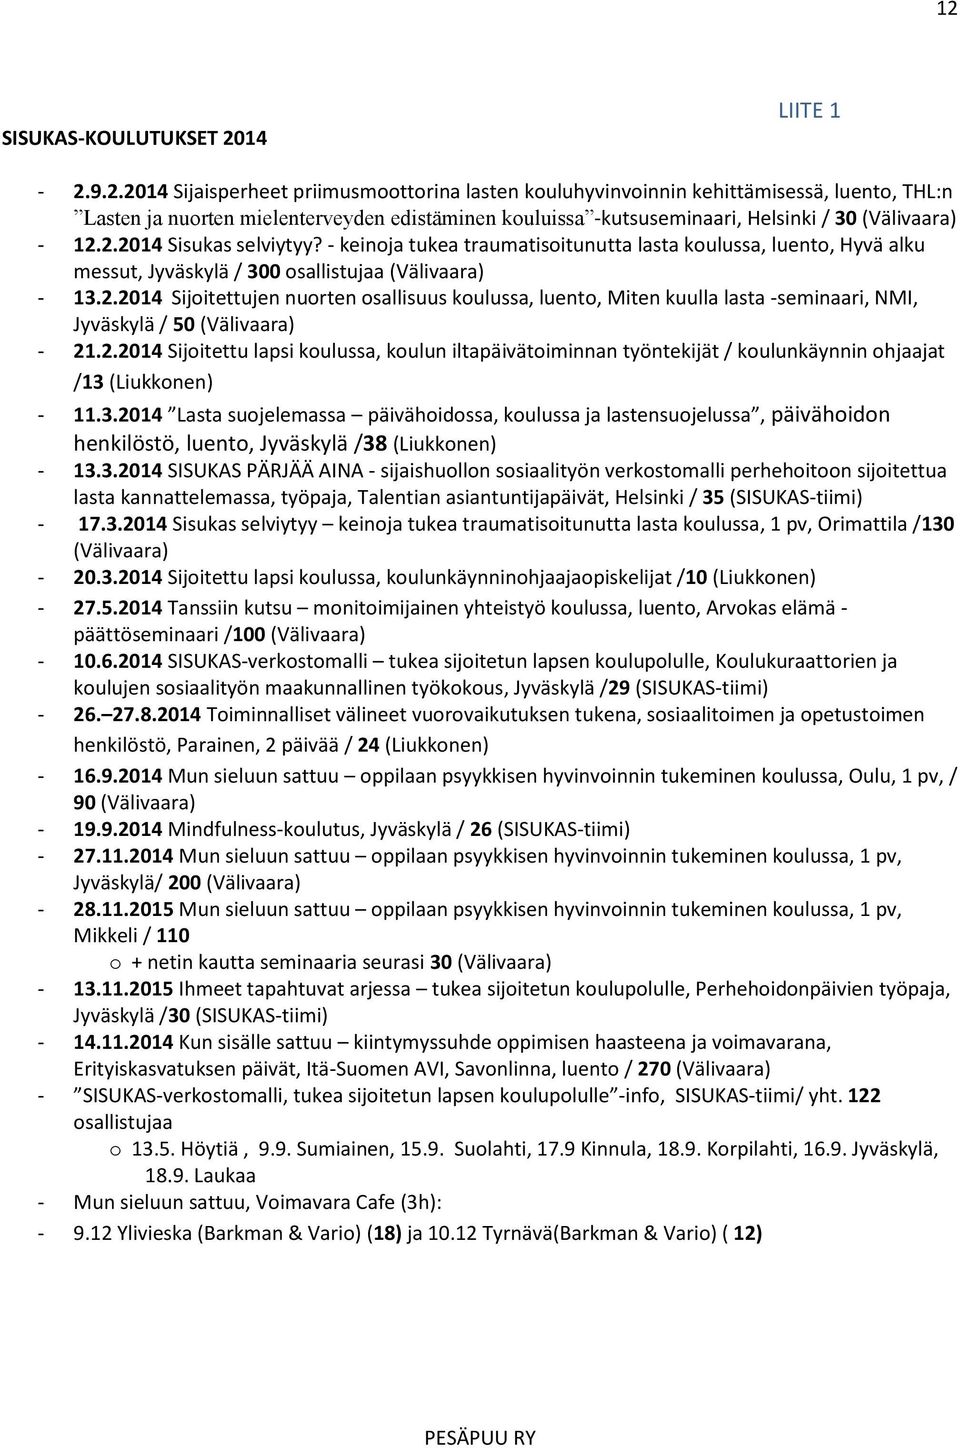 2.2014 Sijoitettu lapsi koulussa, koulun iltapäivätoiminnan työntekijät / koulunkäynnin ohjaajat /13 